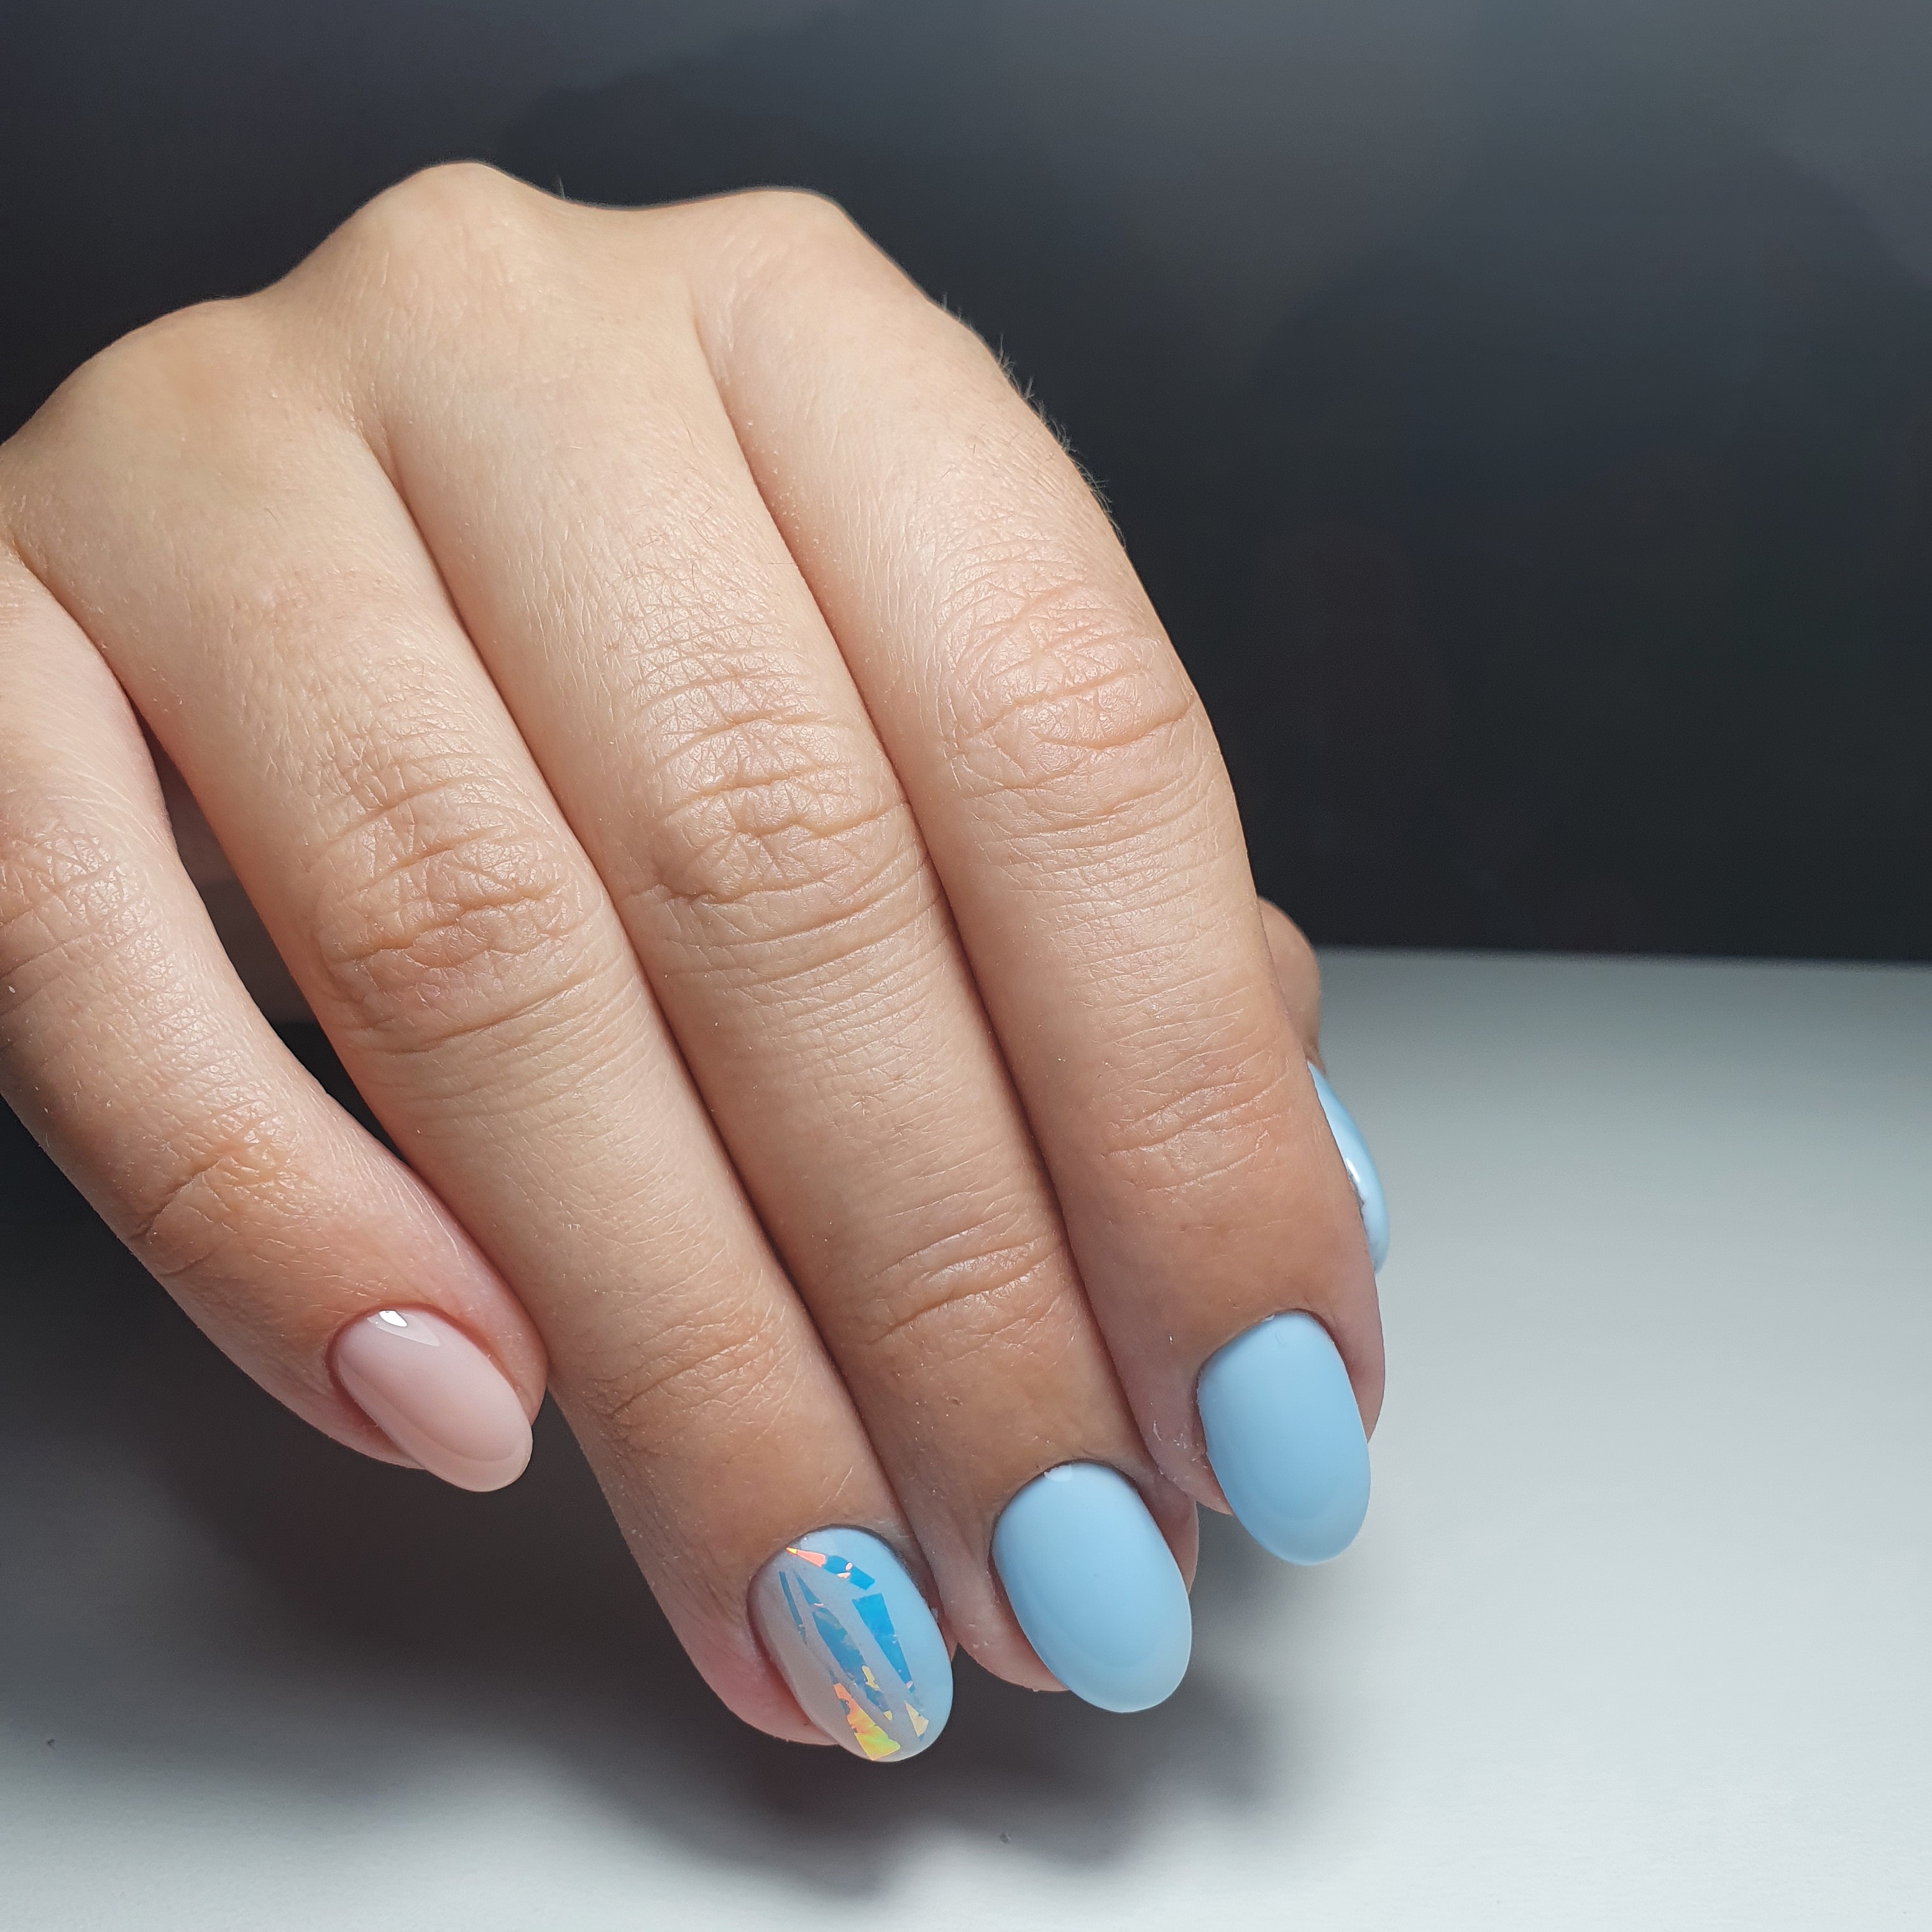 Маникюр с камифубуки в голубом цвете на короткие ногти.